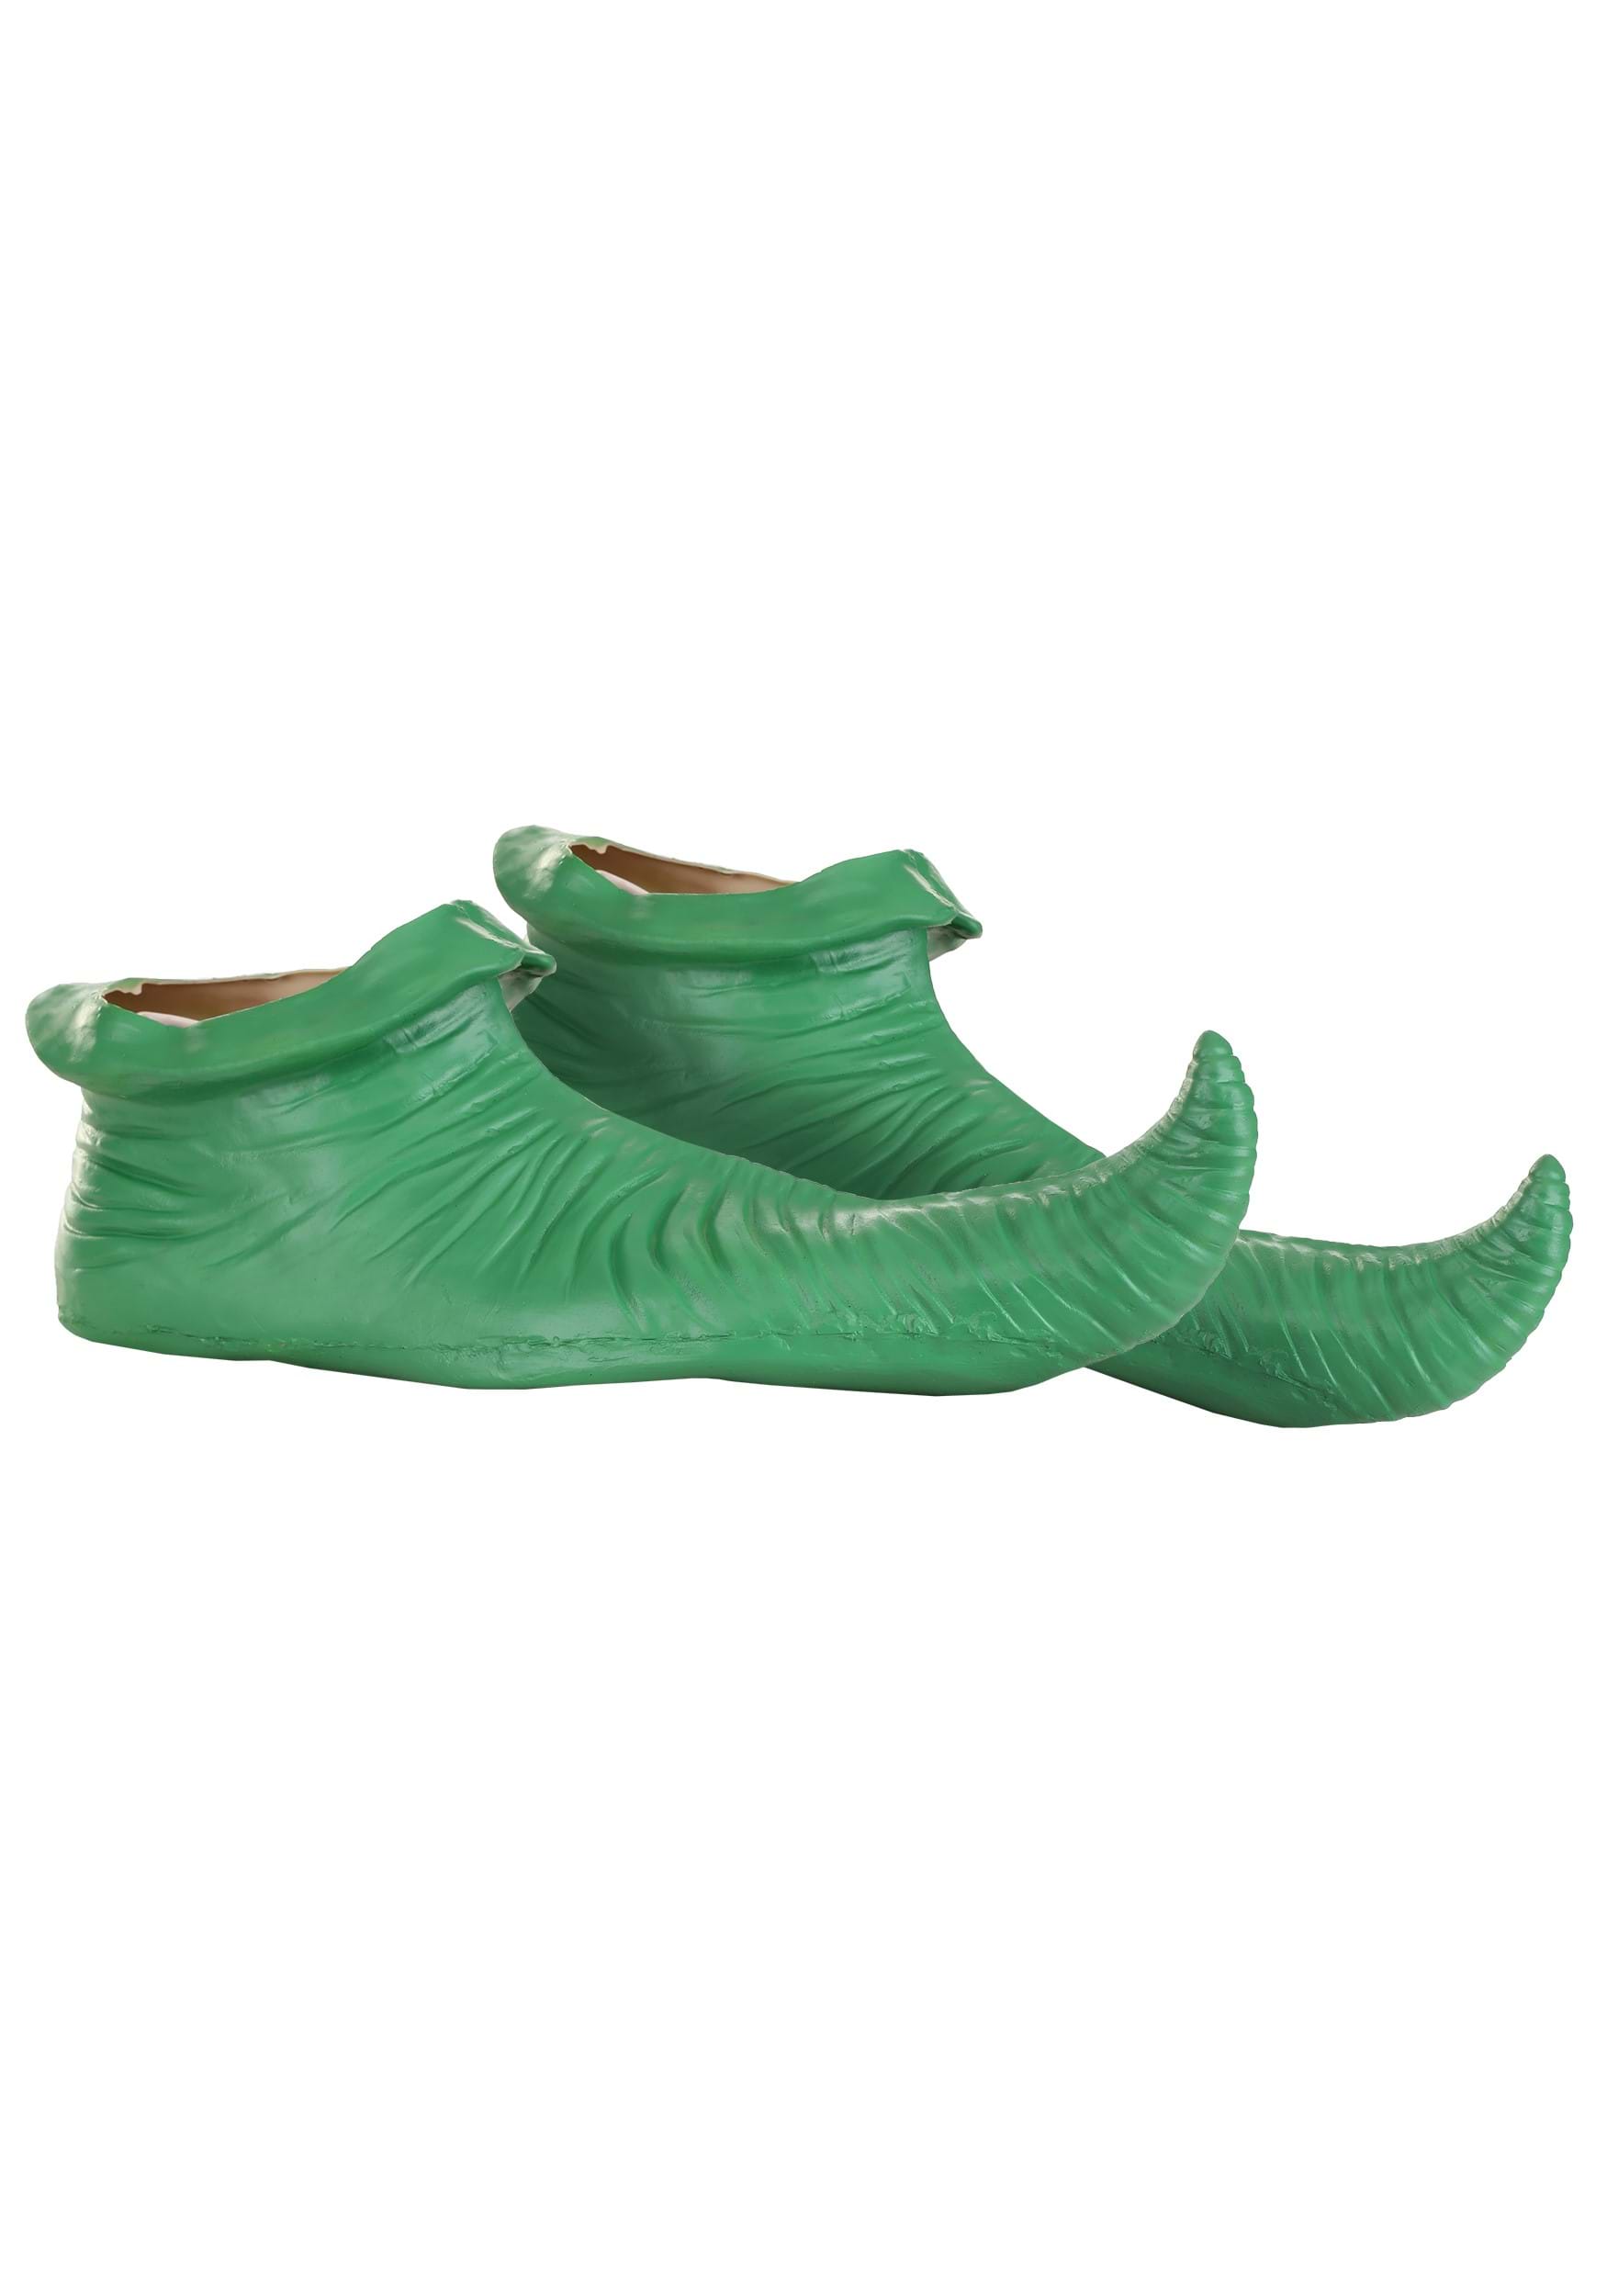 Munchkin Green Shoe Covers